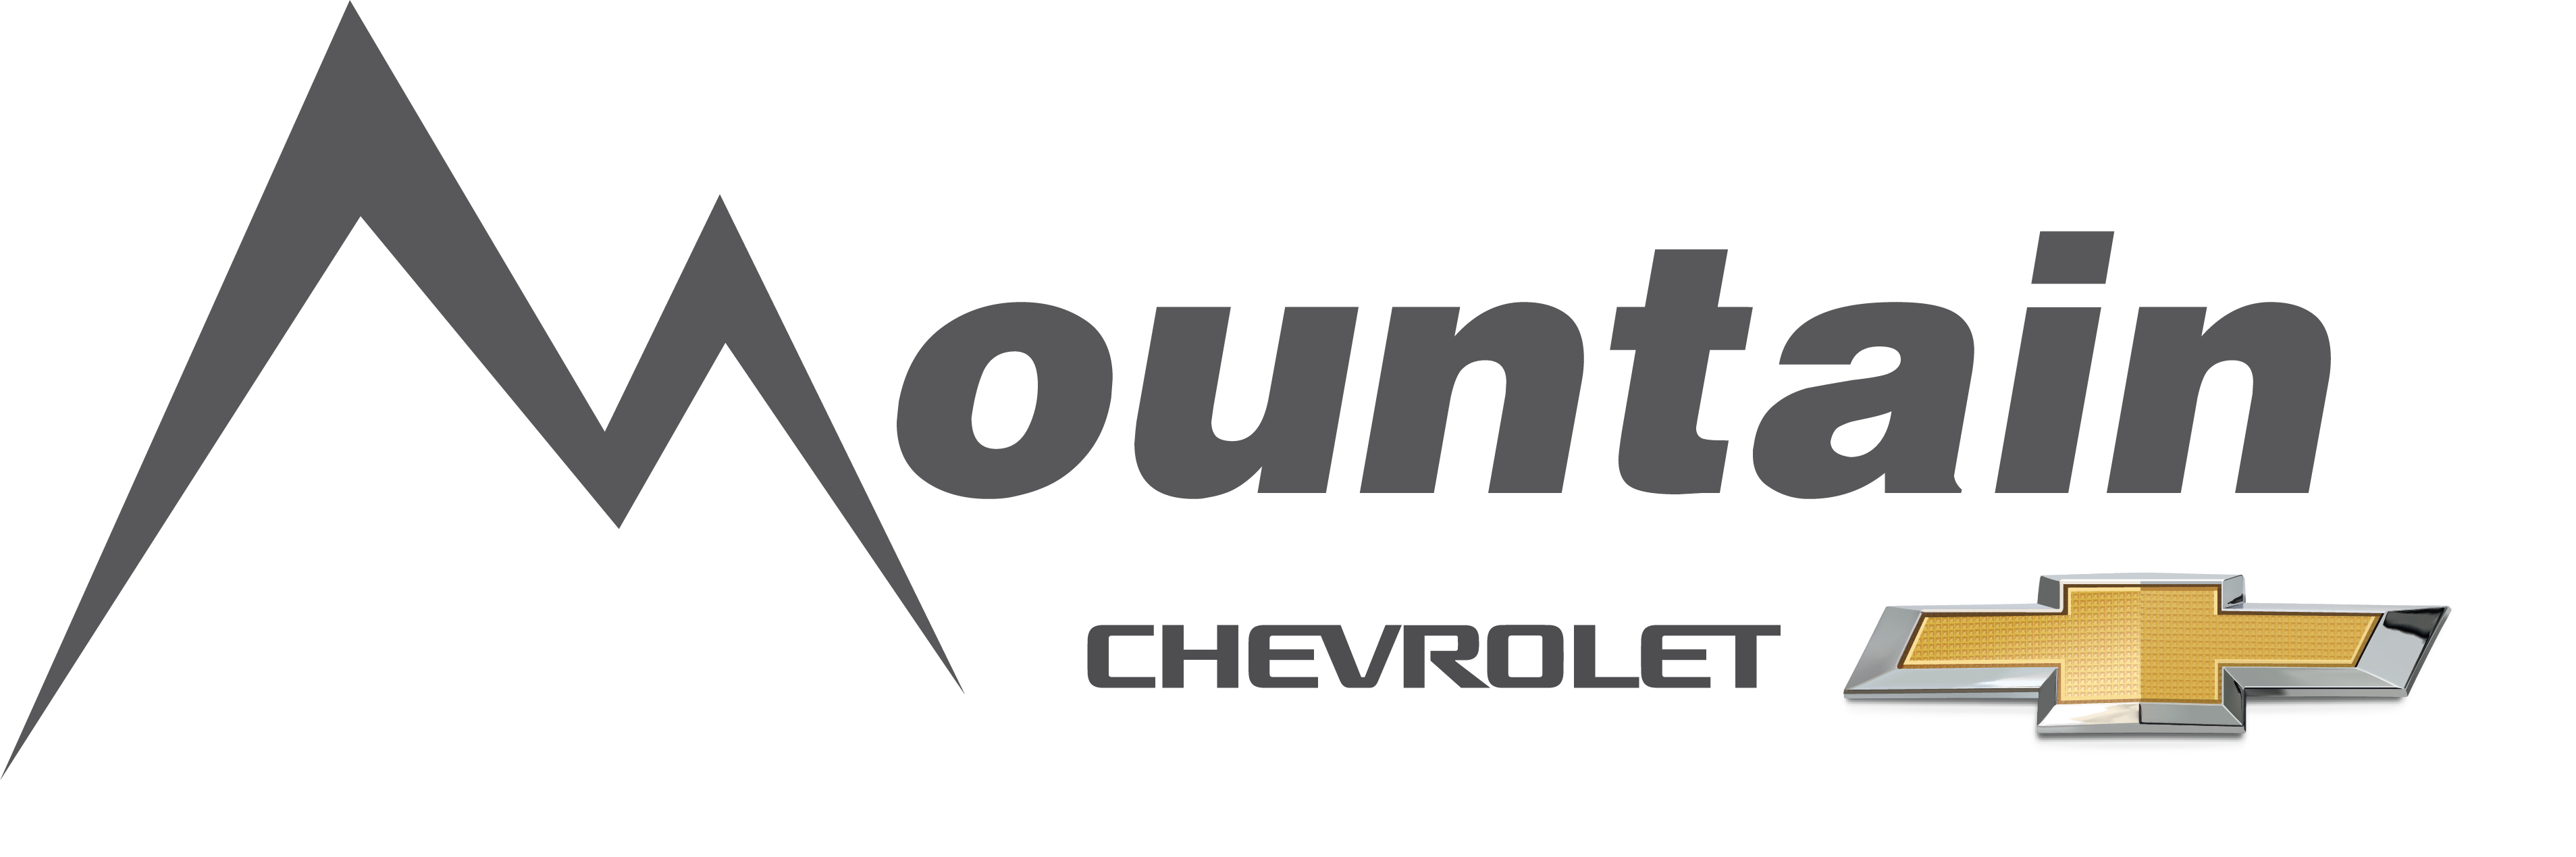 4e. Mountain Chevrolet (Bronze)